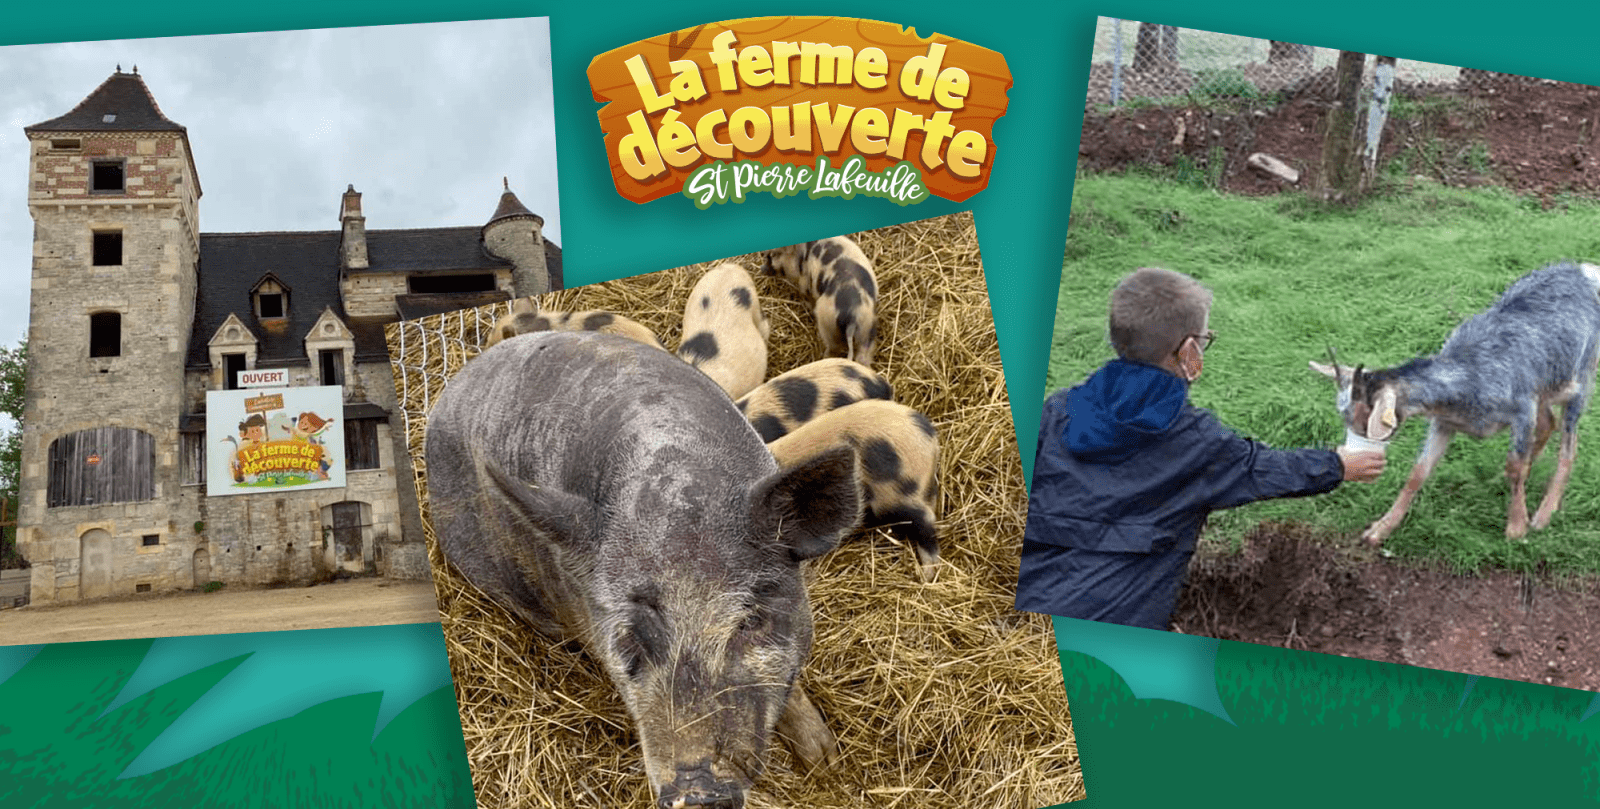 De dieren van de ontdekkingsboerderij St Pierre Lafeuille